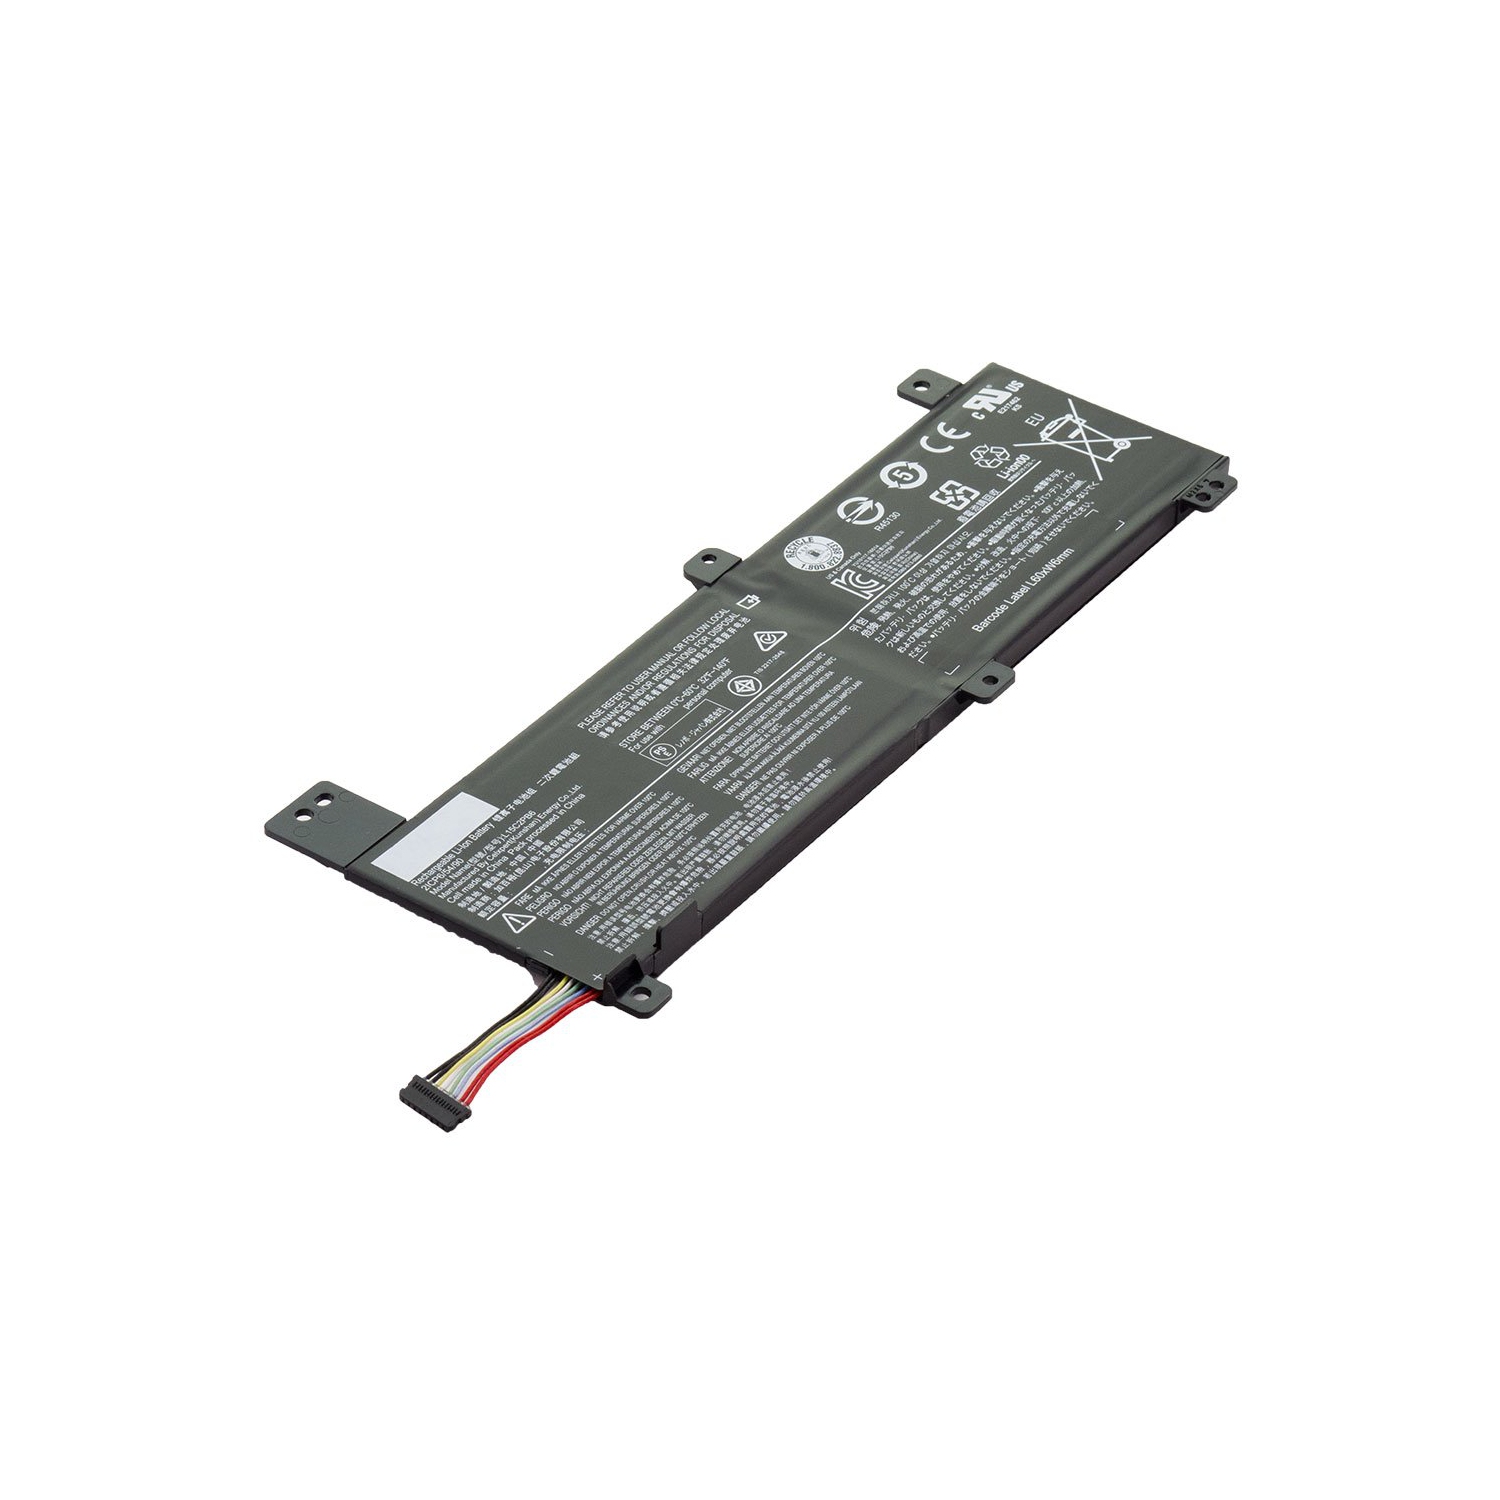 Laptop Battery Replacement for Lenovo IdeaPad 310 14ISK 80SL001TTA, IdeaPad 310 14ISK, L15C2PB6, L15L2PB2, L15M2PB4